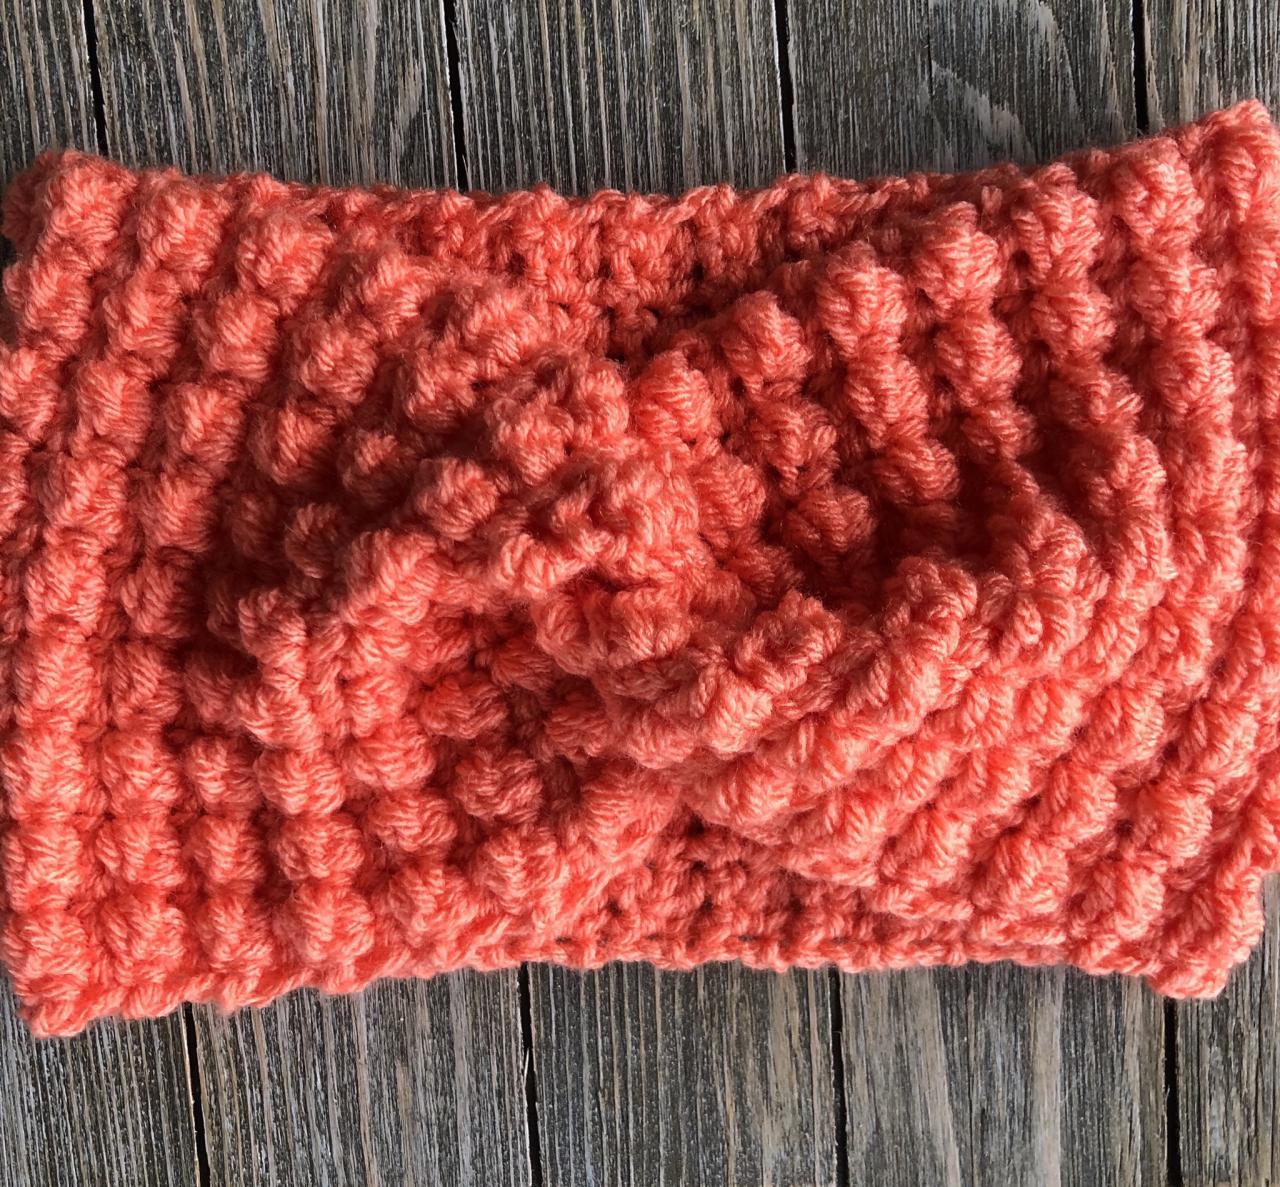 Headband/Ear warmer handmade crochet cozy winter wear